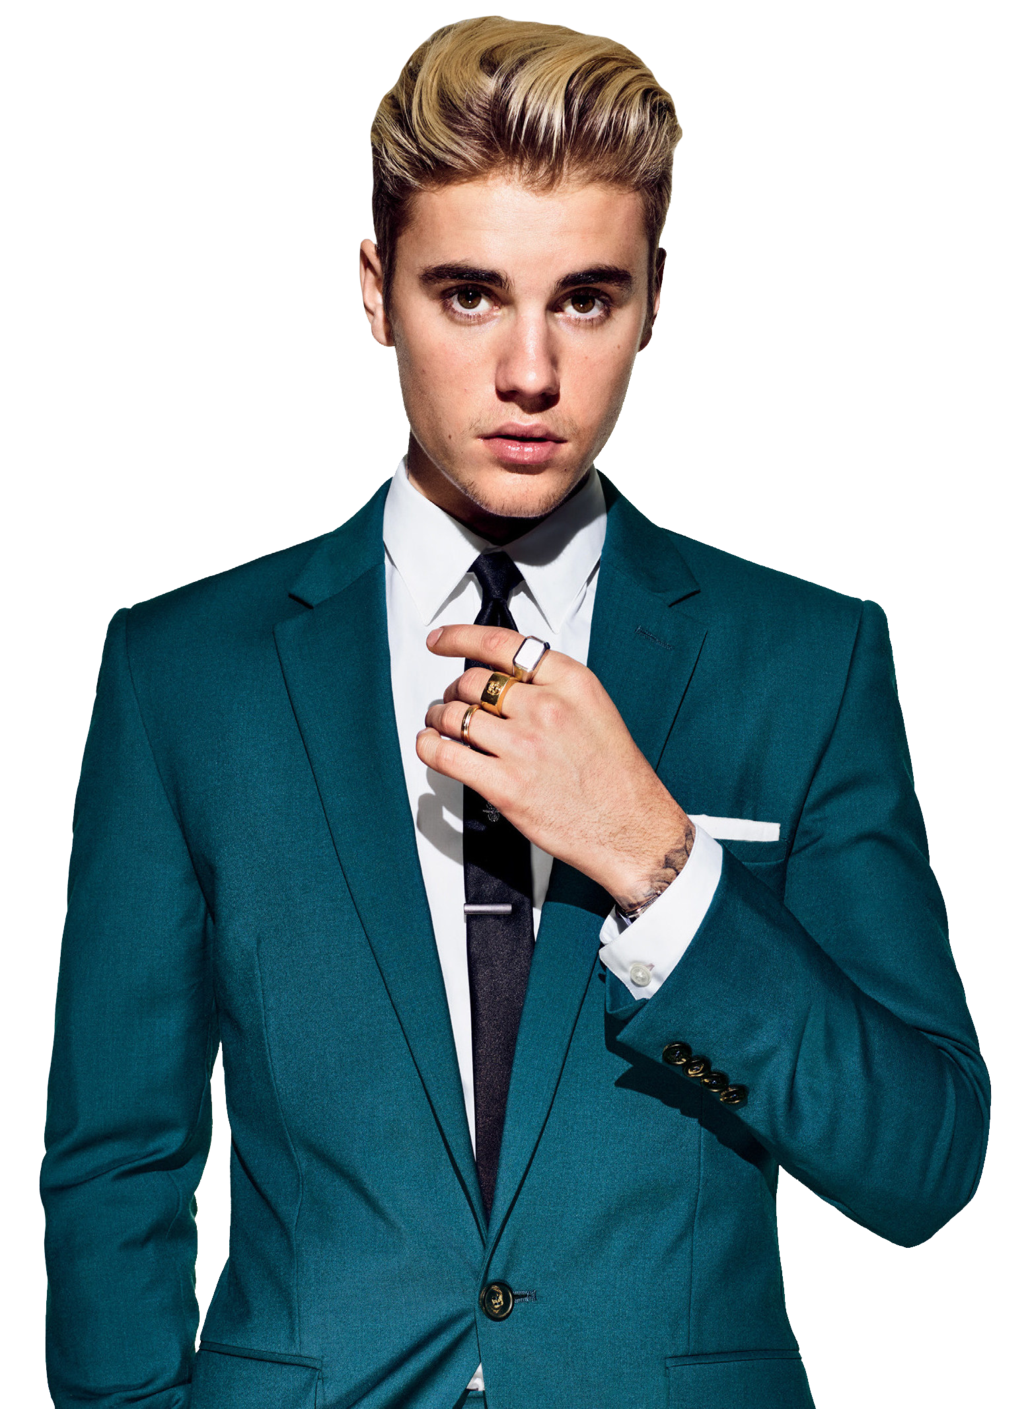 Justin Bieber PNG Image in Transparent pngteam.com